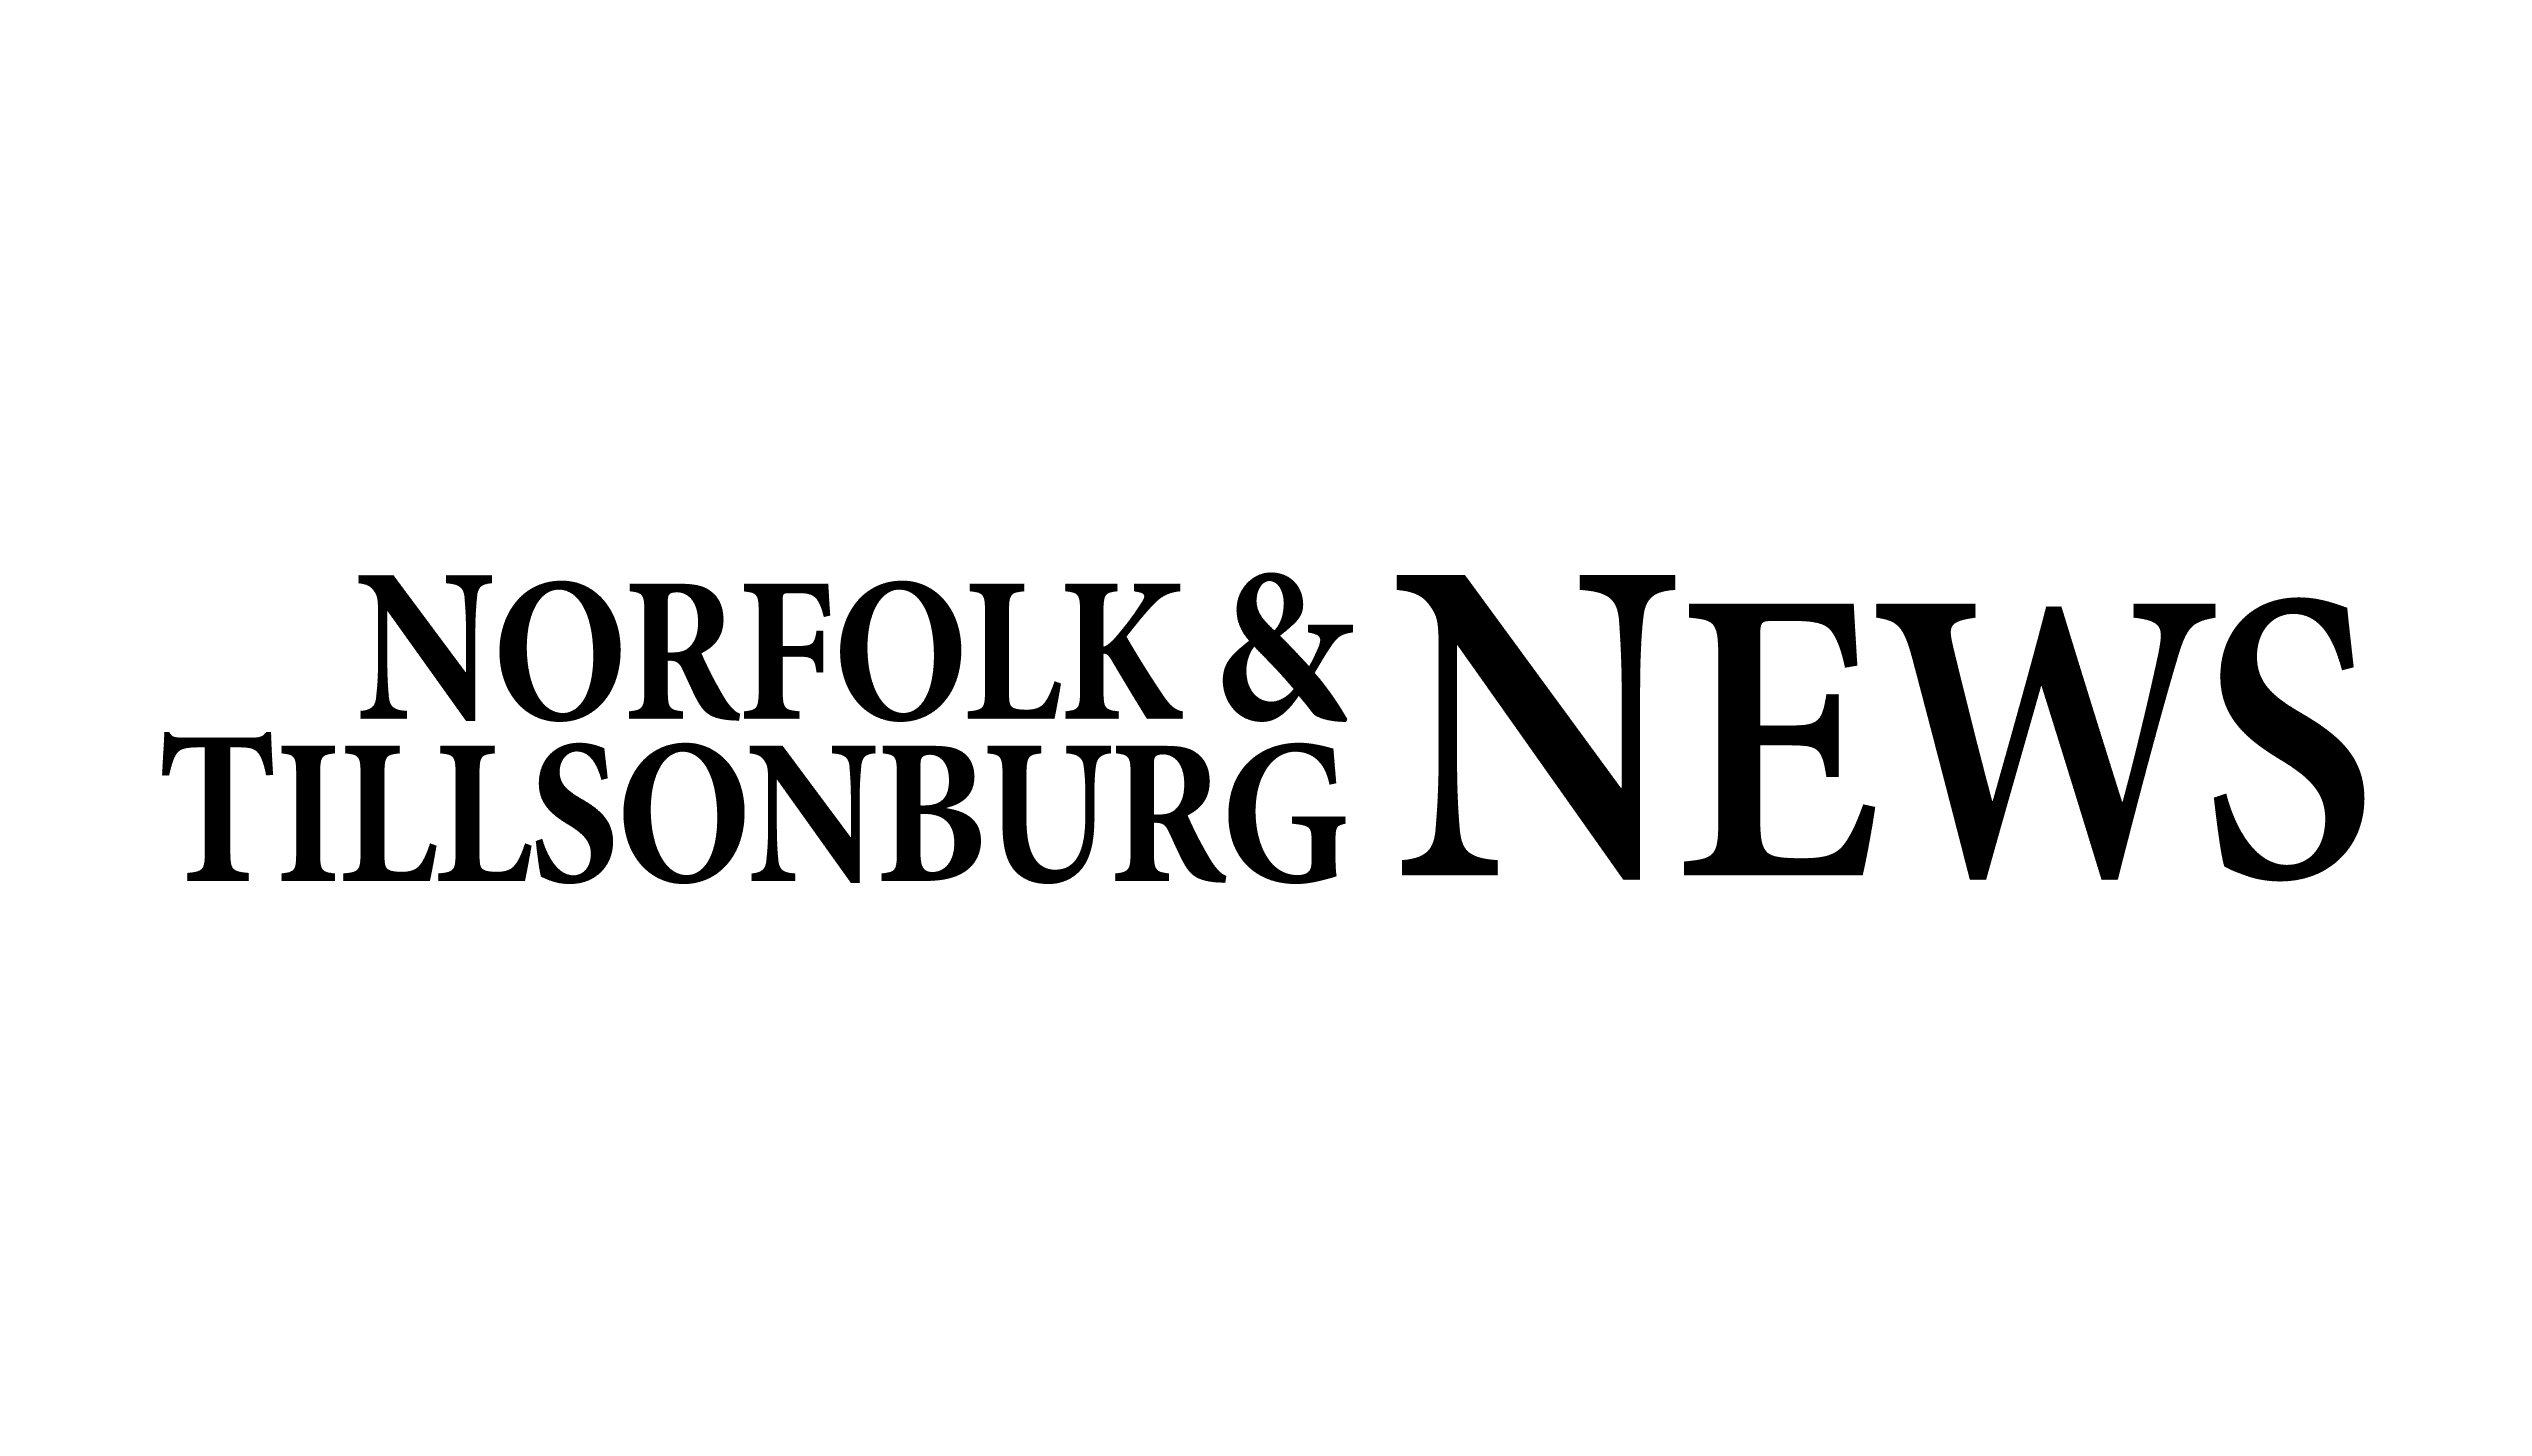 Norfolk & Tillsonburg News logo